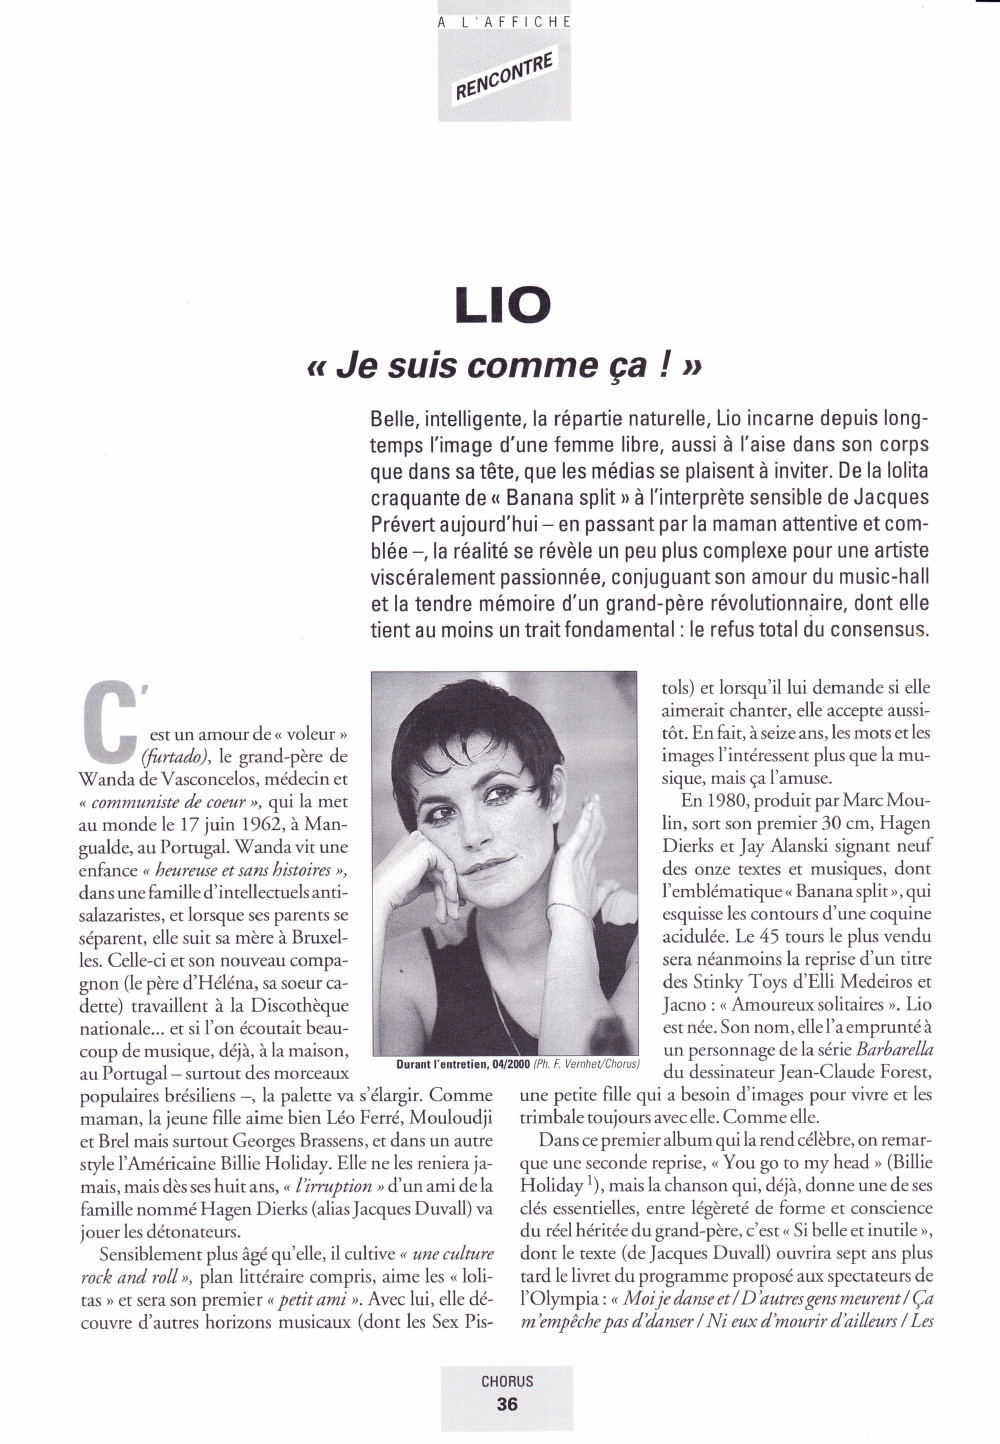 Interview de LIO dans "Chorus" (été 2000) 13111012214516724011718821